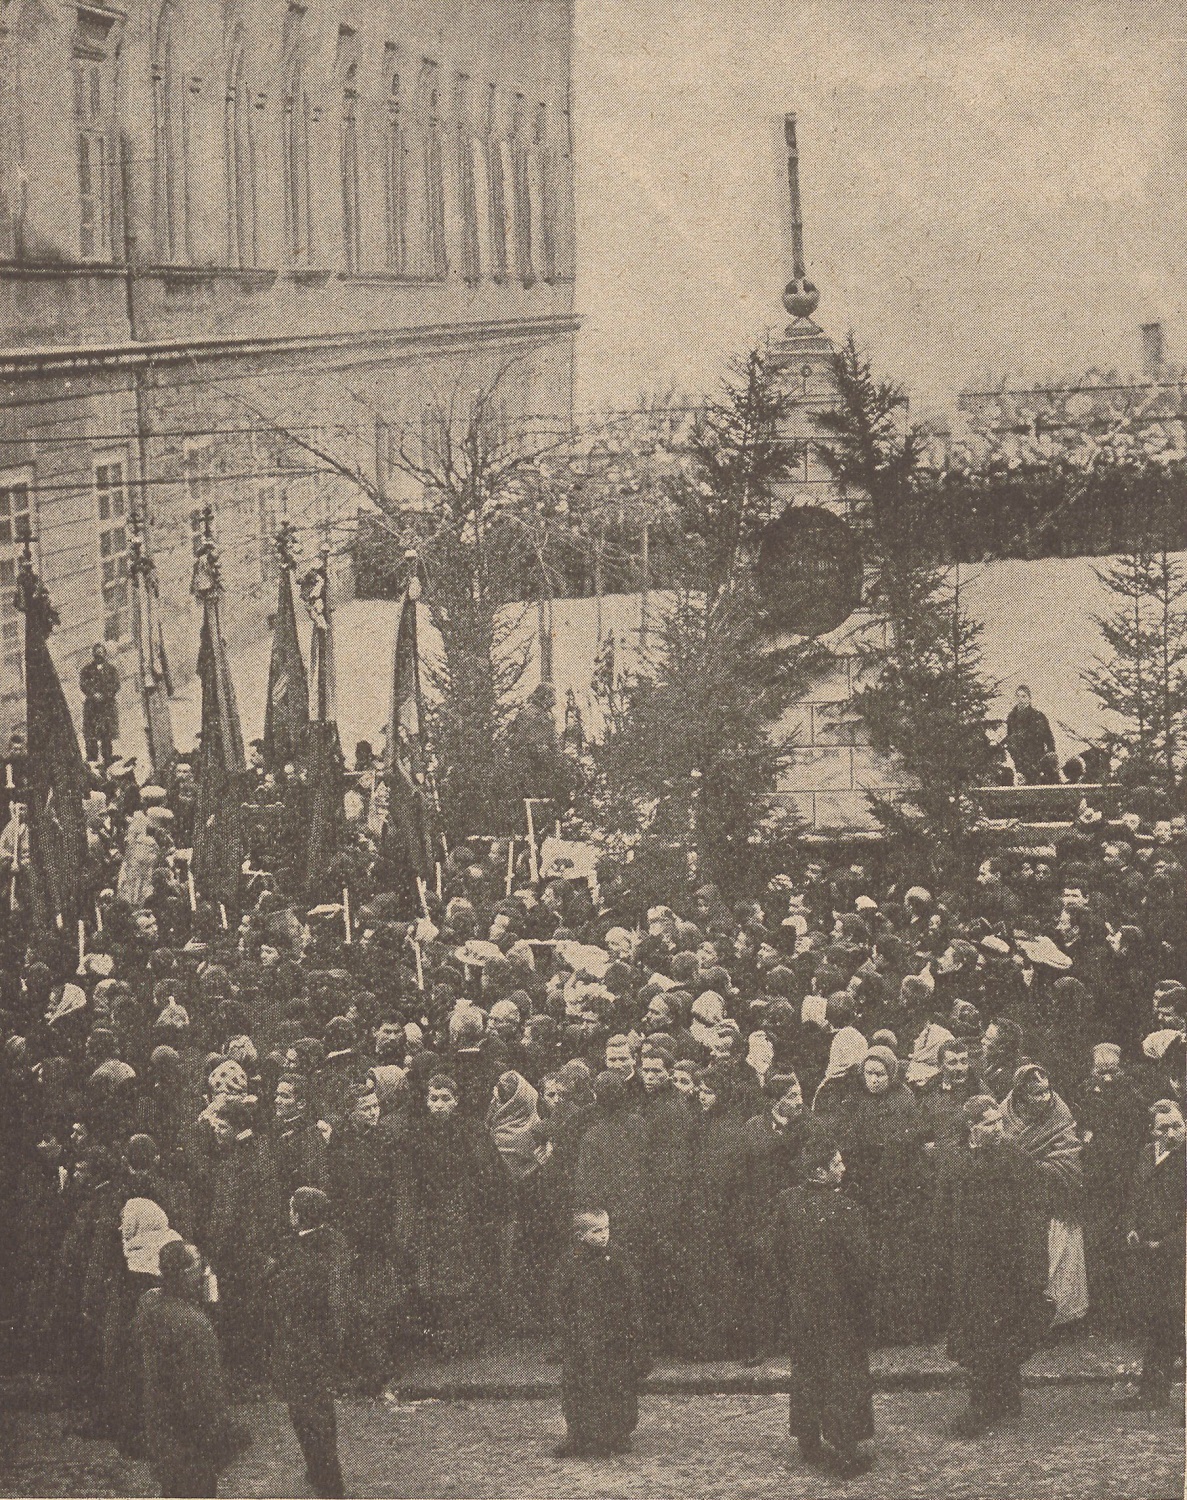 Epiphany celebration near the City Hall in 1902